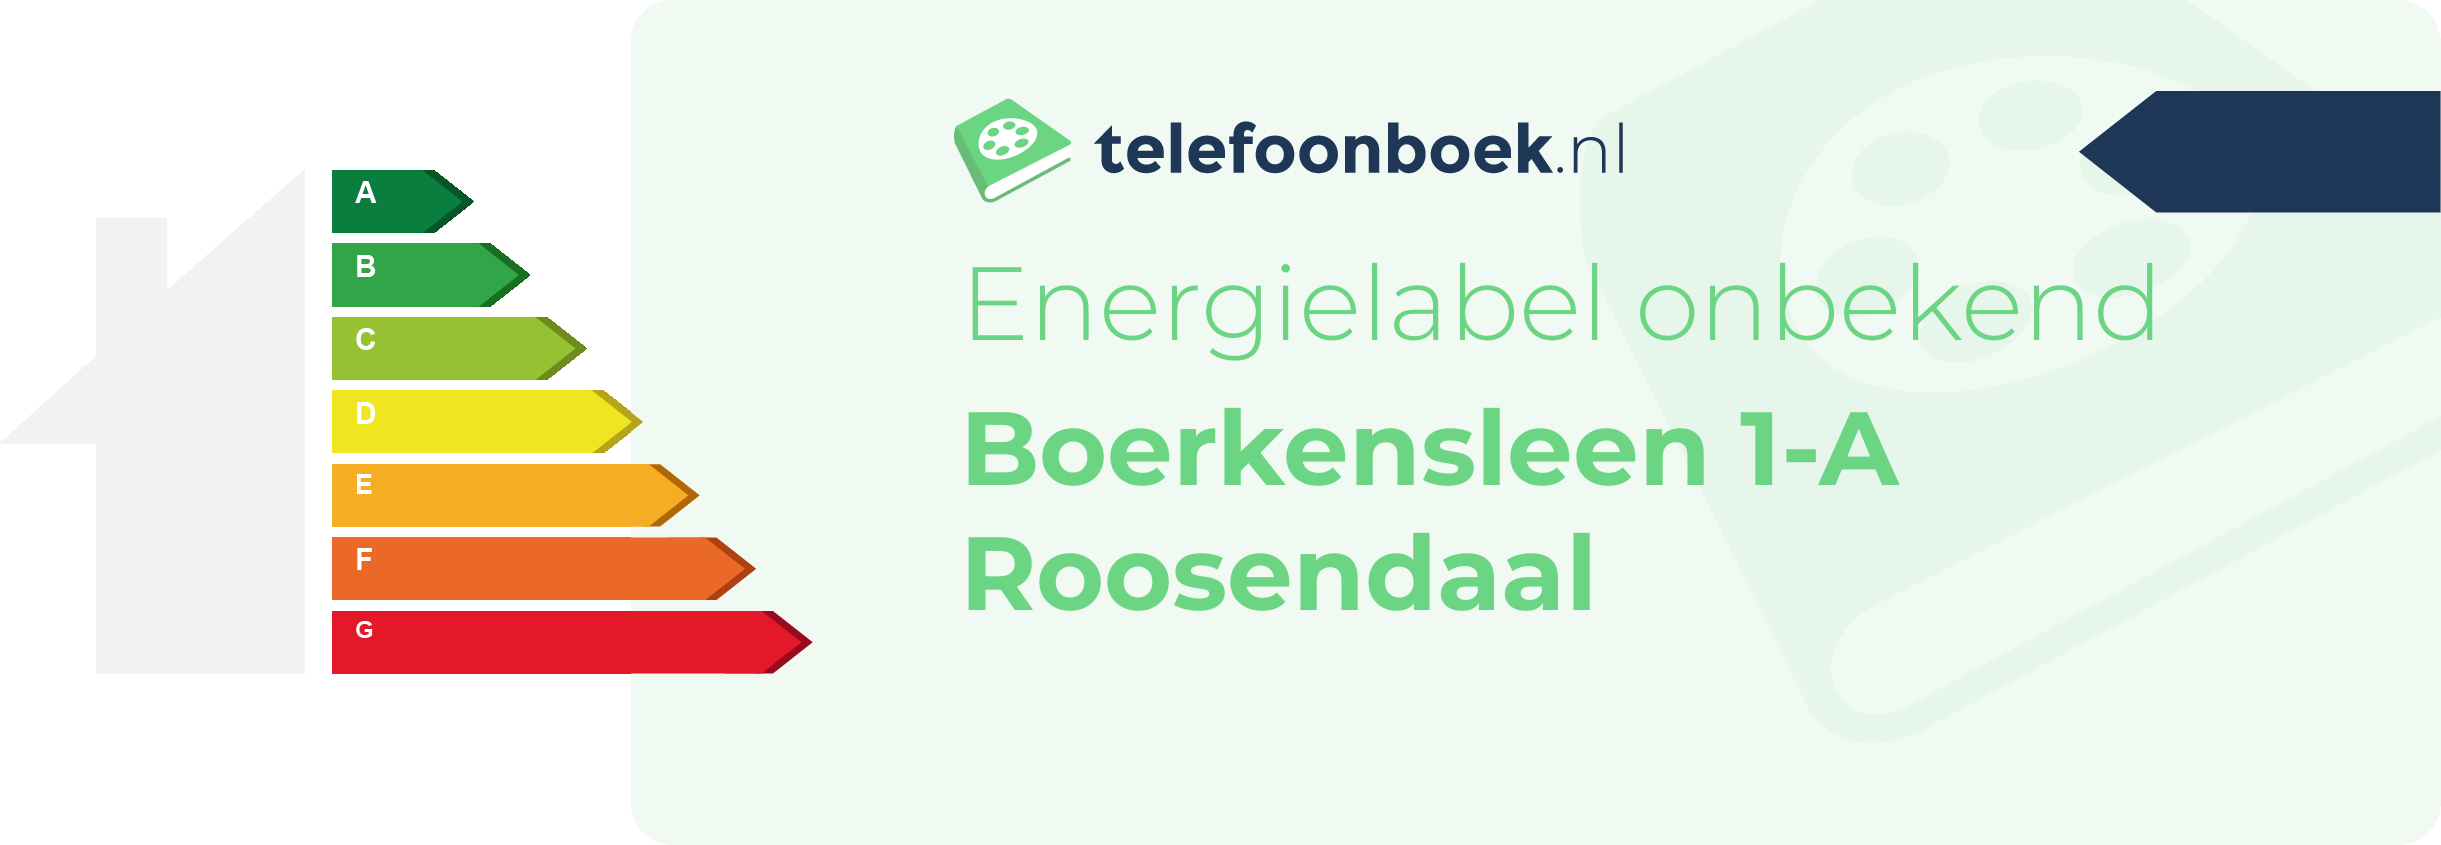 Energielabel Boerkensleen 1-A Roosendaal